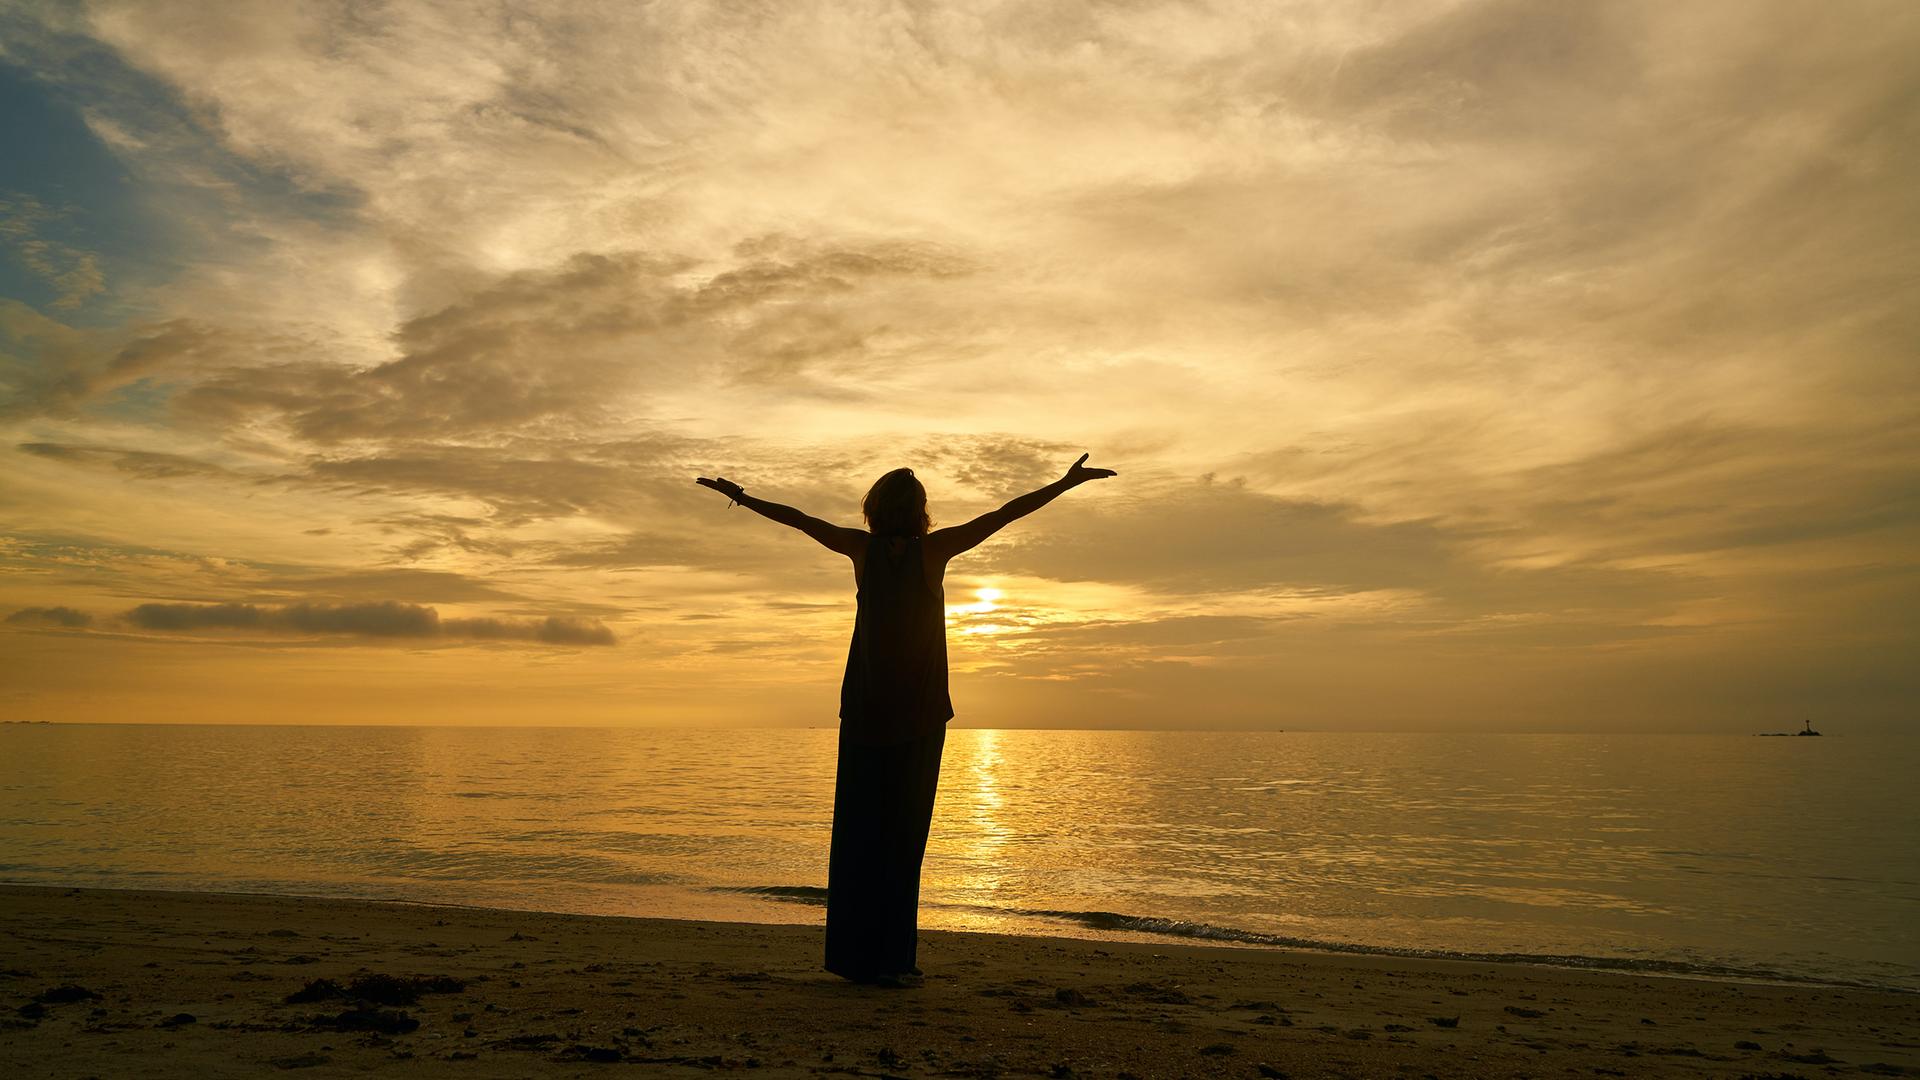 Eine weibliche Silhouette, mit zum Himmel erhobenen Armen, betrachtet den Sonnenuntergang am Meer.